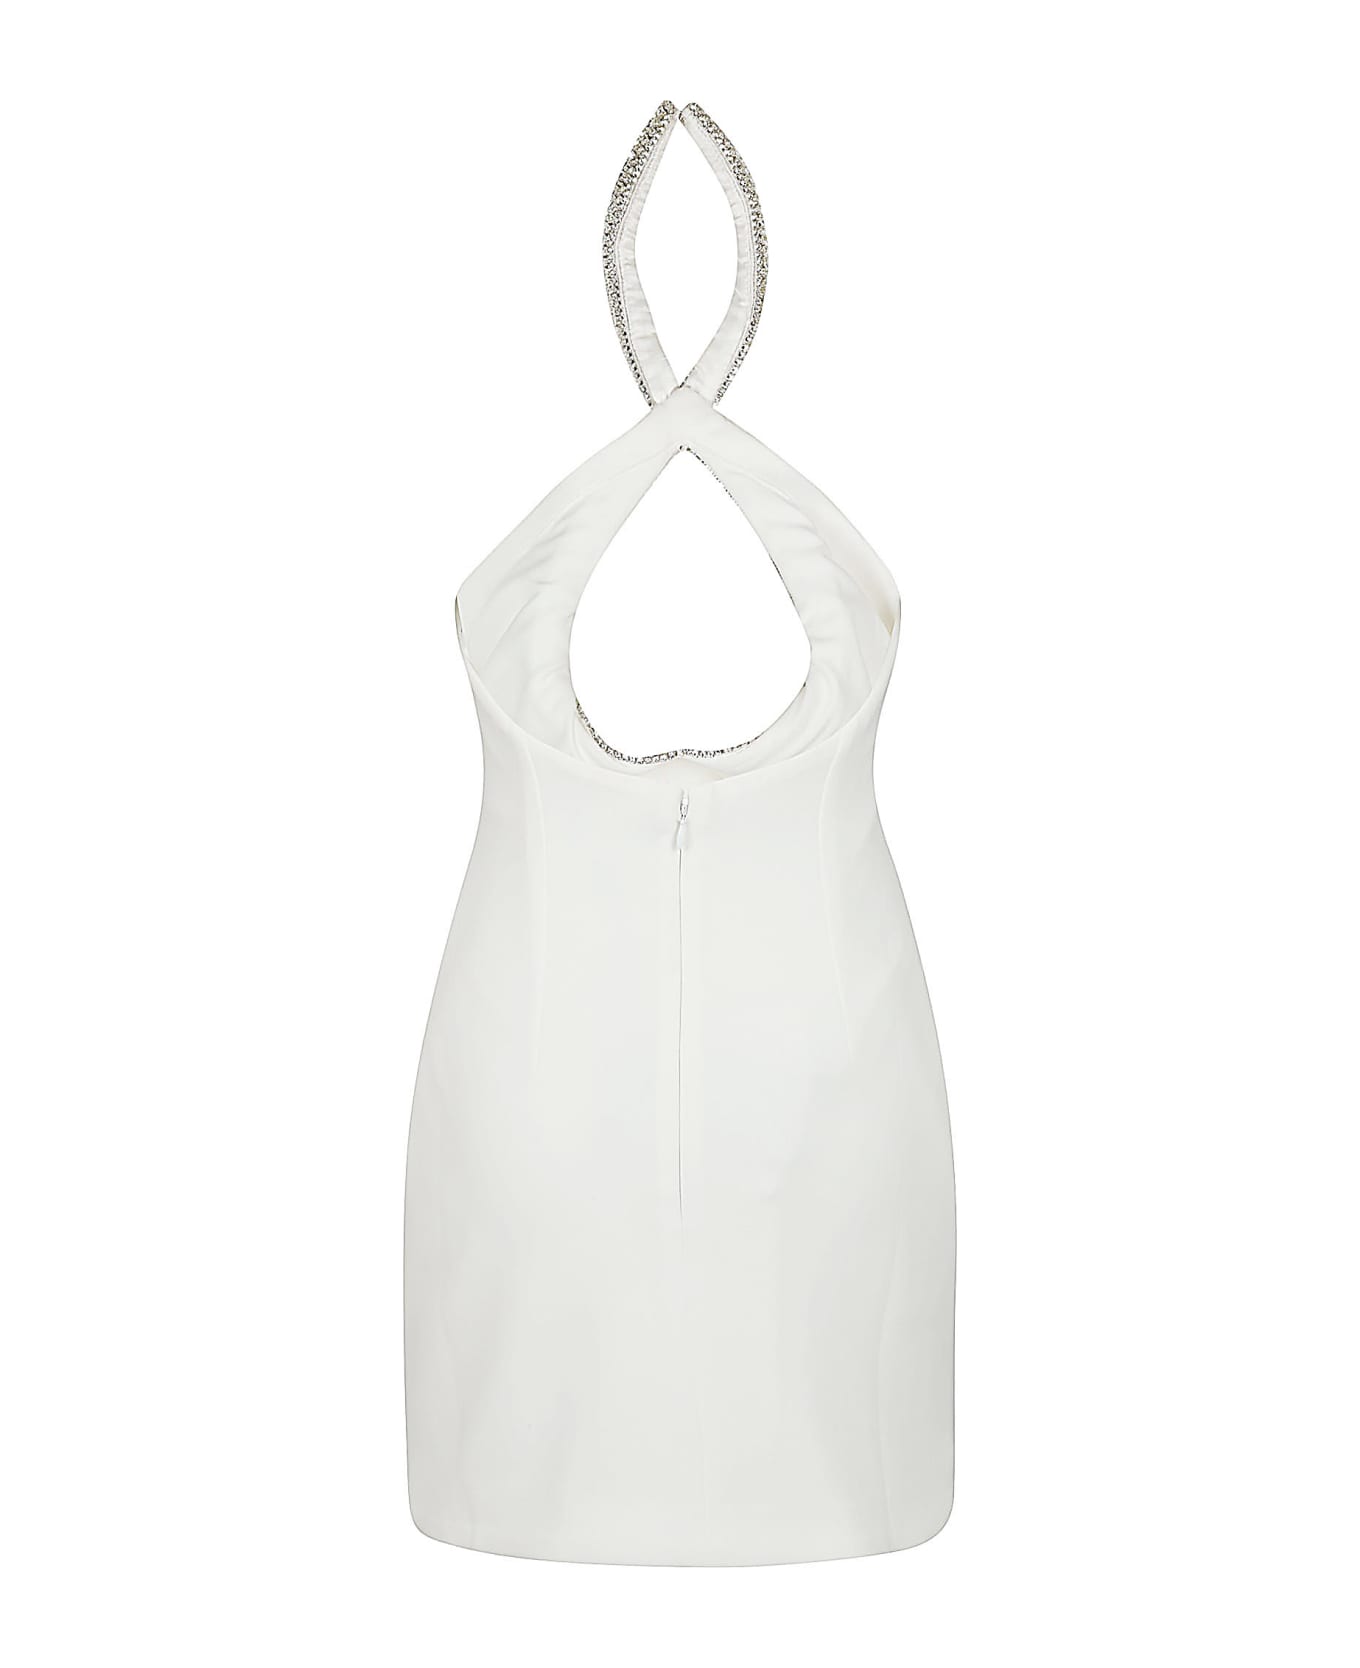 retrofete Halter Neck Embellished Off-shoulder Short Dress - White/Silver